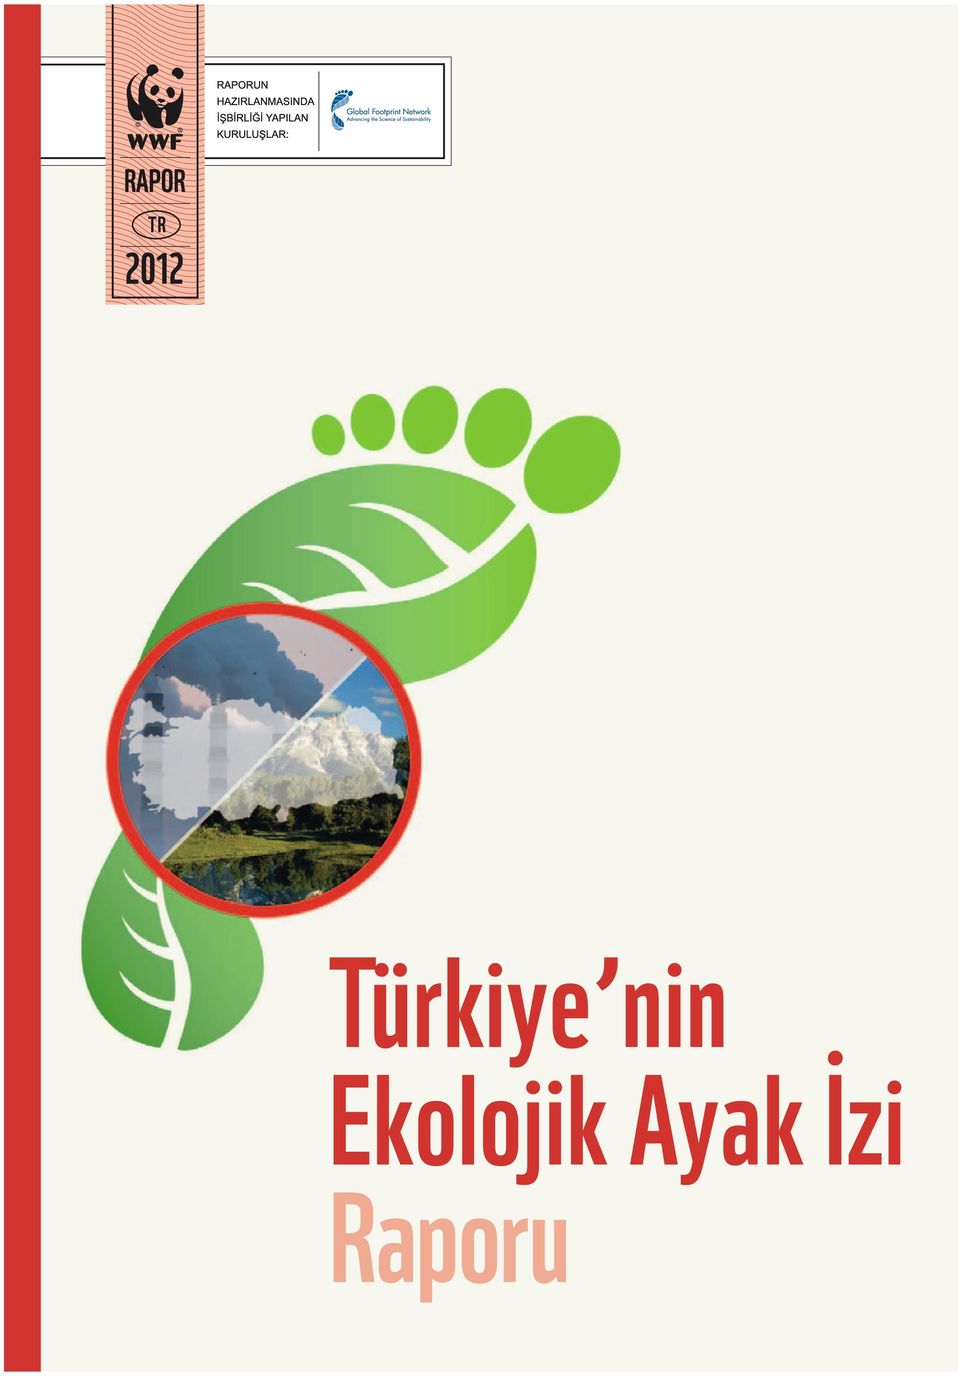 %35 TÜRKİYE NİN EKOLOJİK AYAK İZİ RAPORU TÜRKİYE NİN EKOLOJİK AYAK İZİ RAPORU Tarım Ayak İzi nin Türkiye nin toplam Ekolojik Ayak İzi içindeki payı.